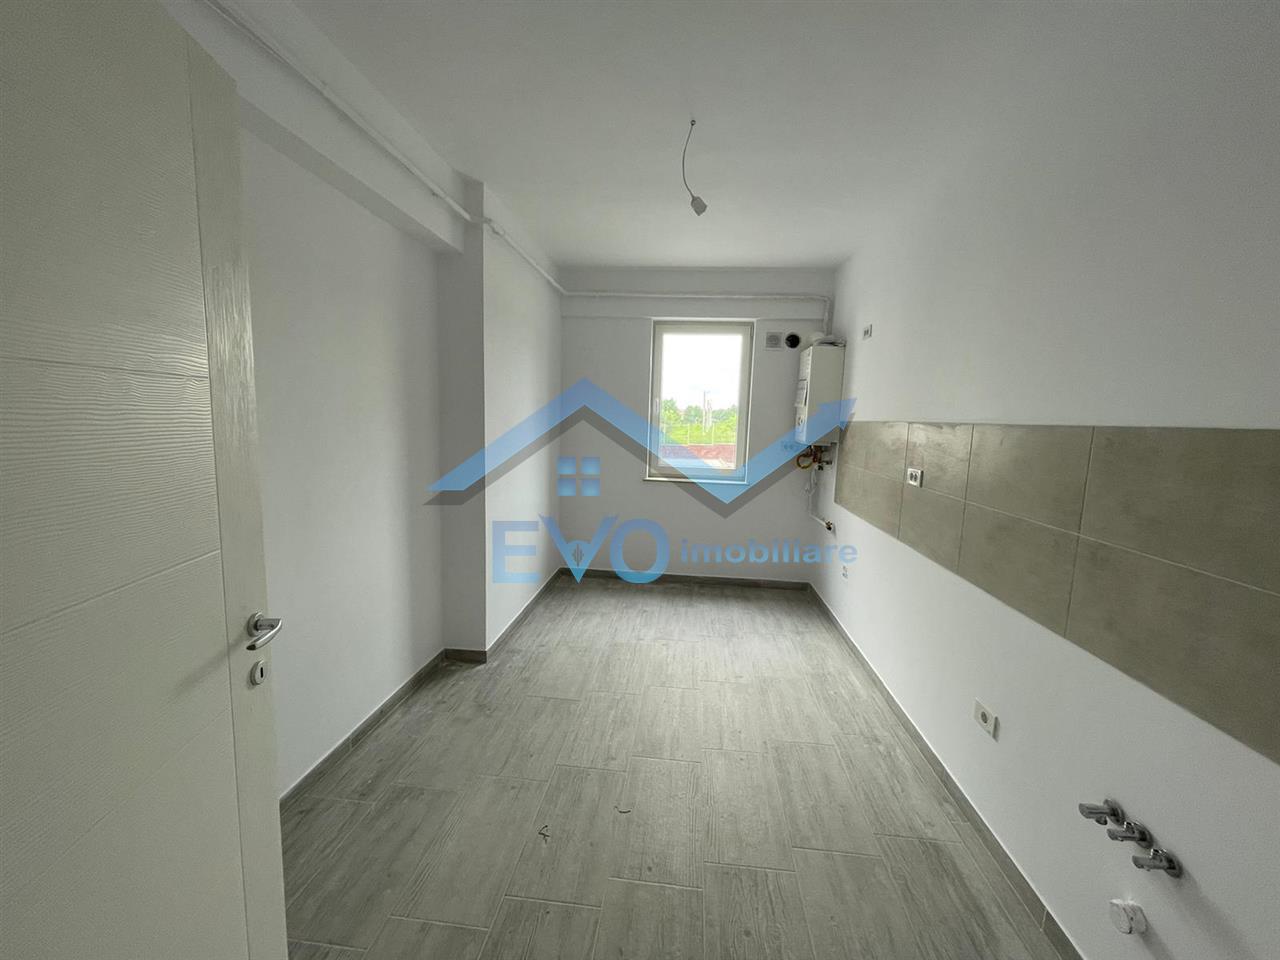 Apartament nou cu 2 camere, Moara de Vant, 72,5 mp